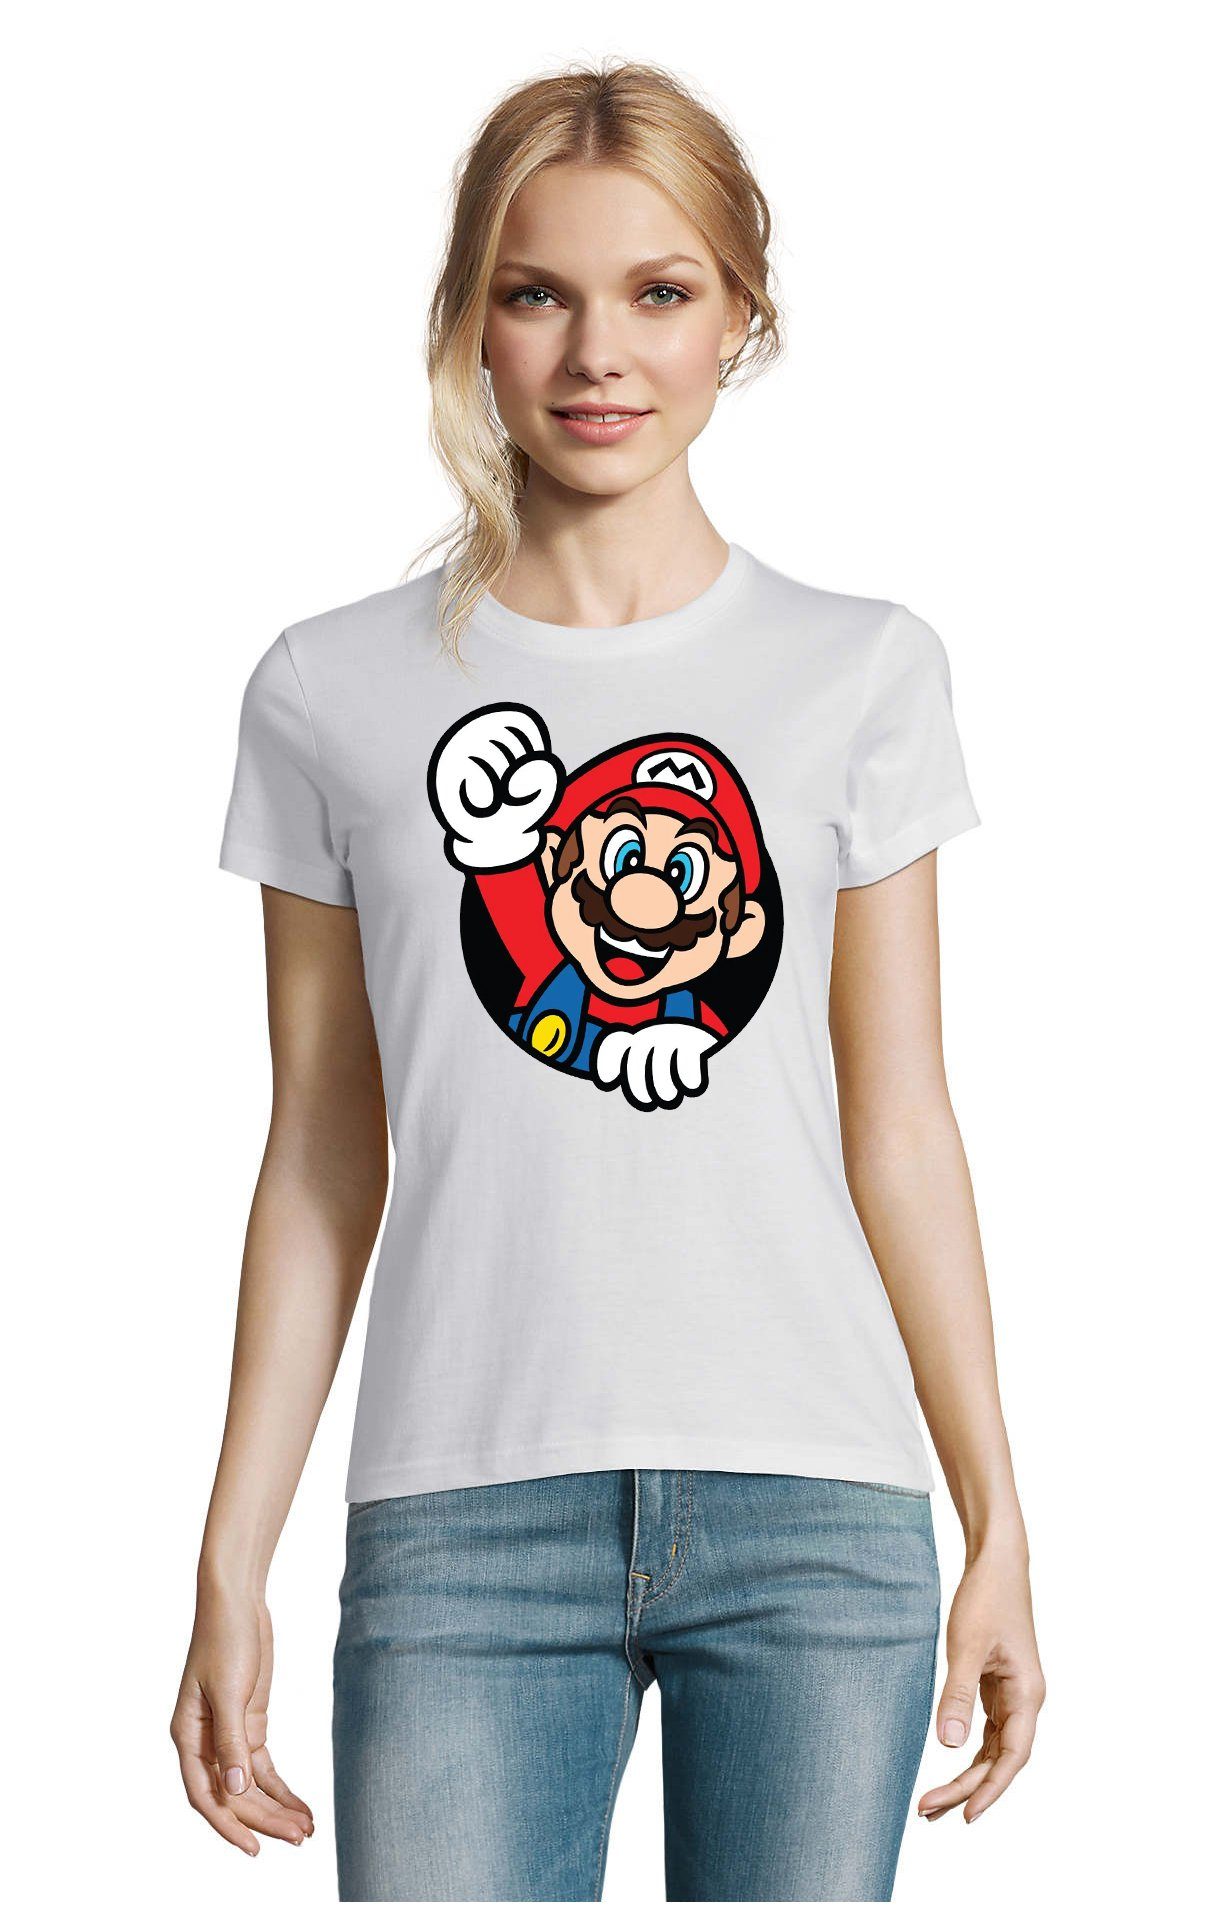 Blondie & Brownie T-Shirt Damen Super Mario Faust Nerd Konsole Gaming Spiel Nintendo Weiss